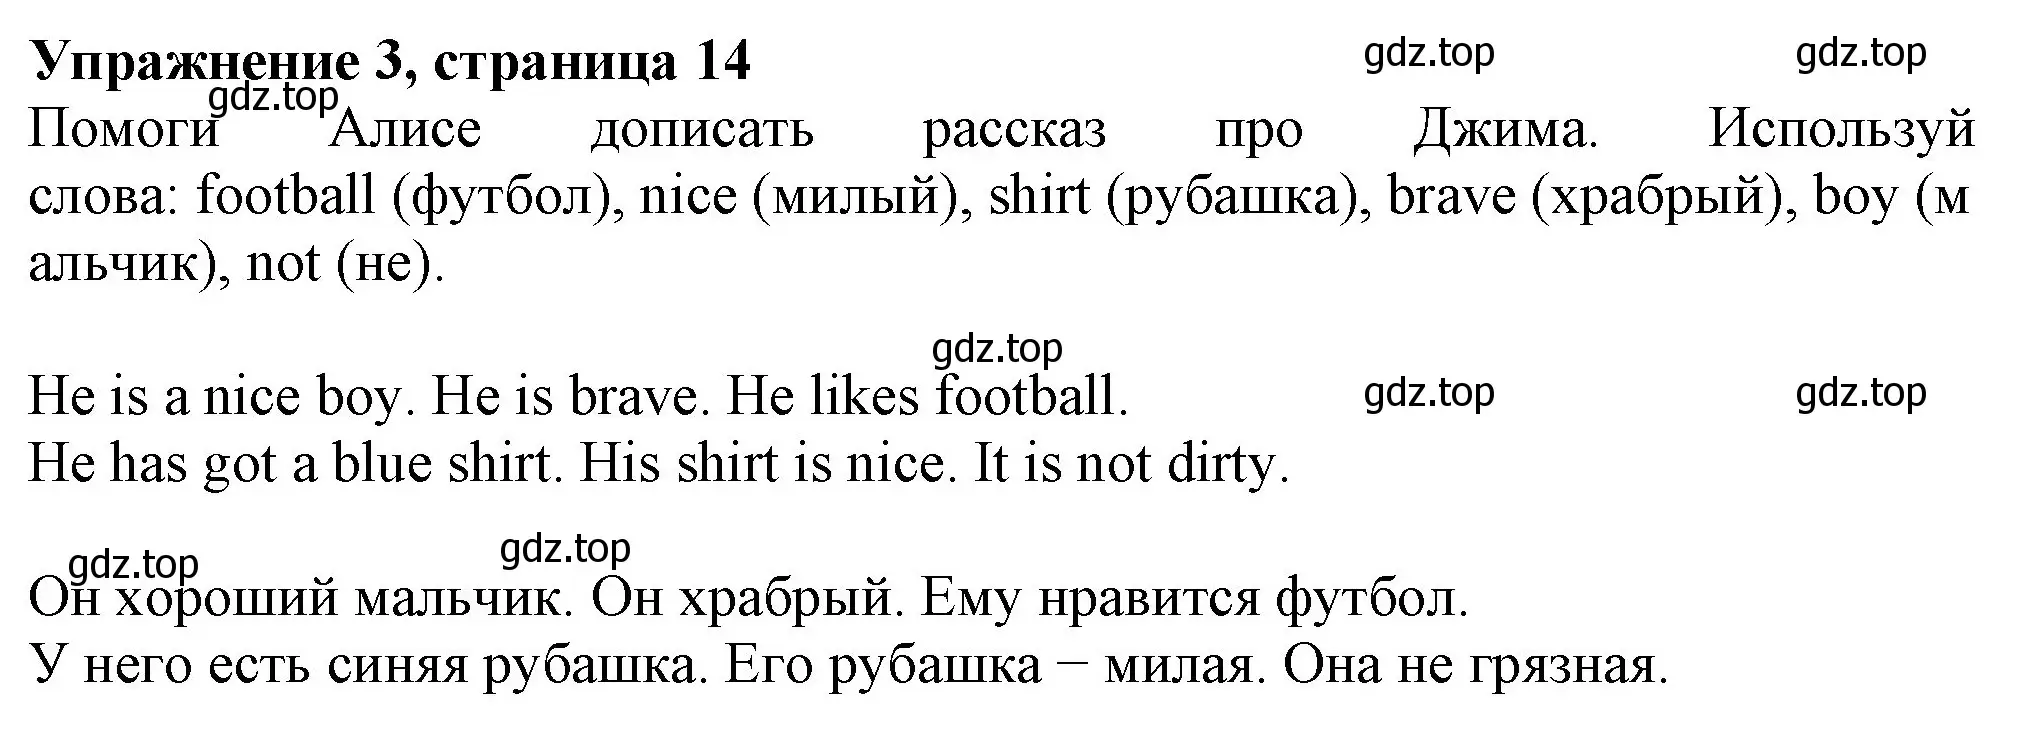 Решение номер 3 (страница 14) гдз по английскому языку 3 класс Биболетова, Денисенко, рабочая тетрадь